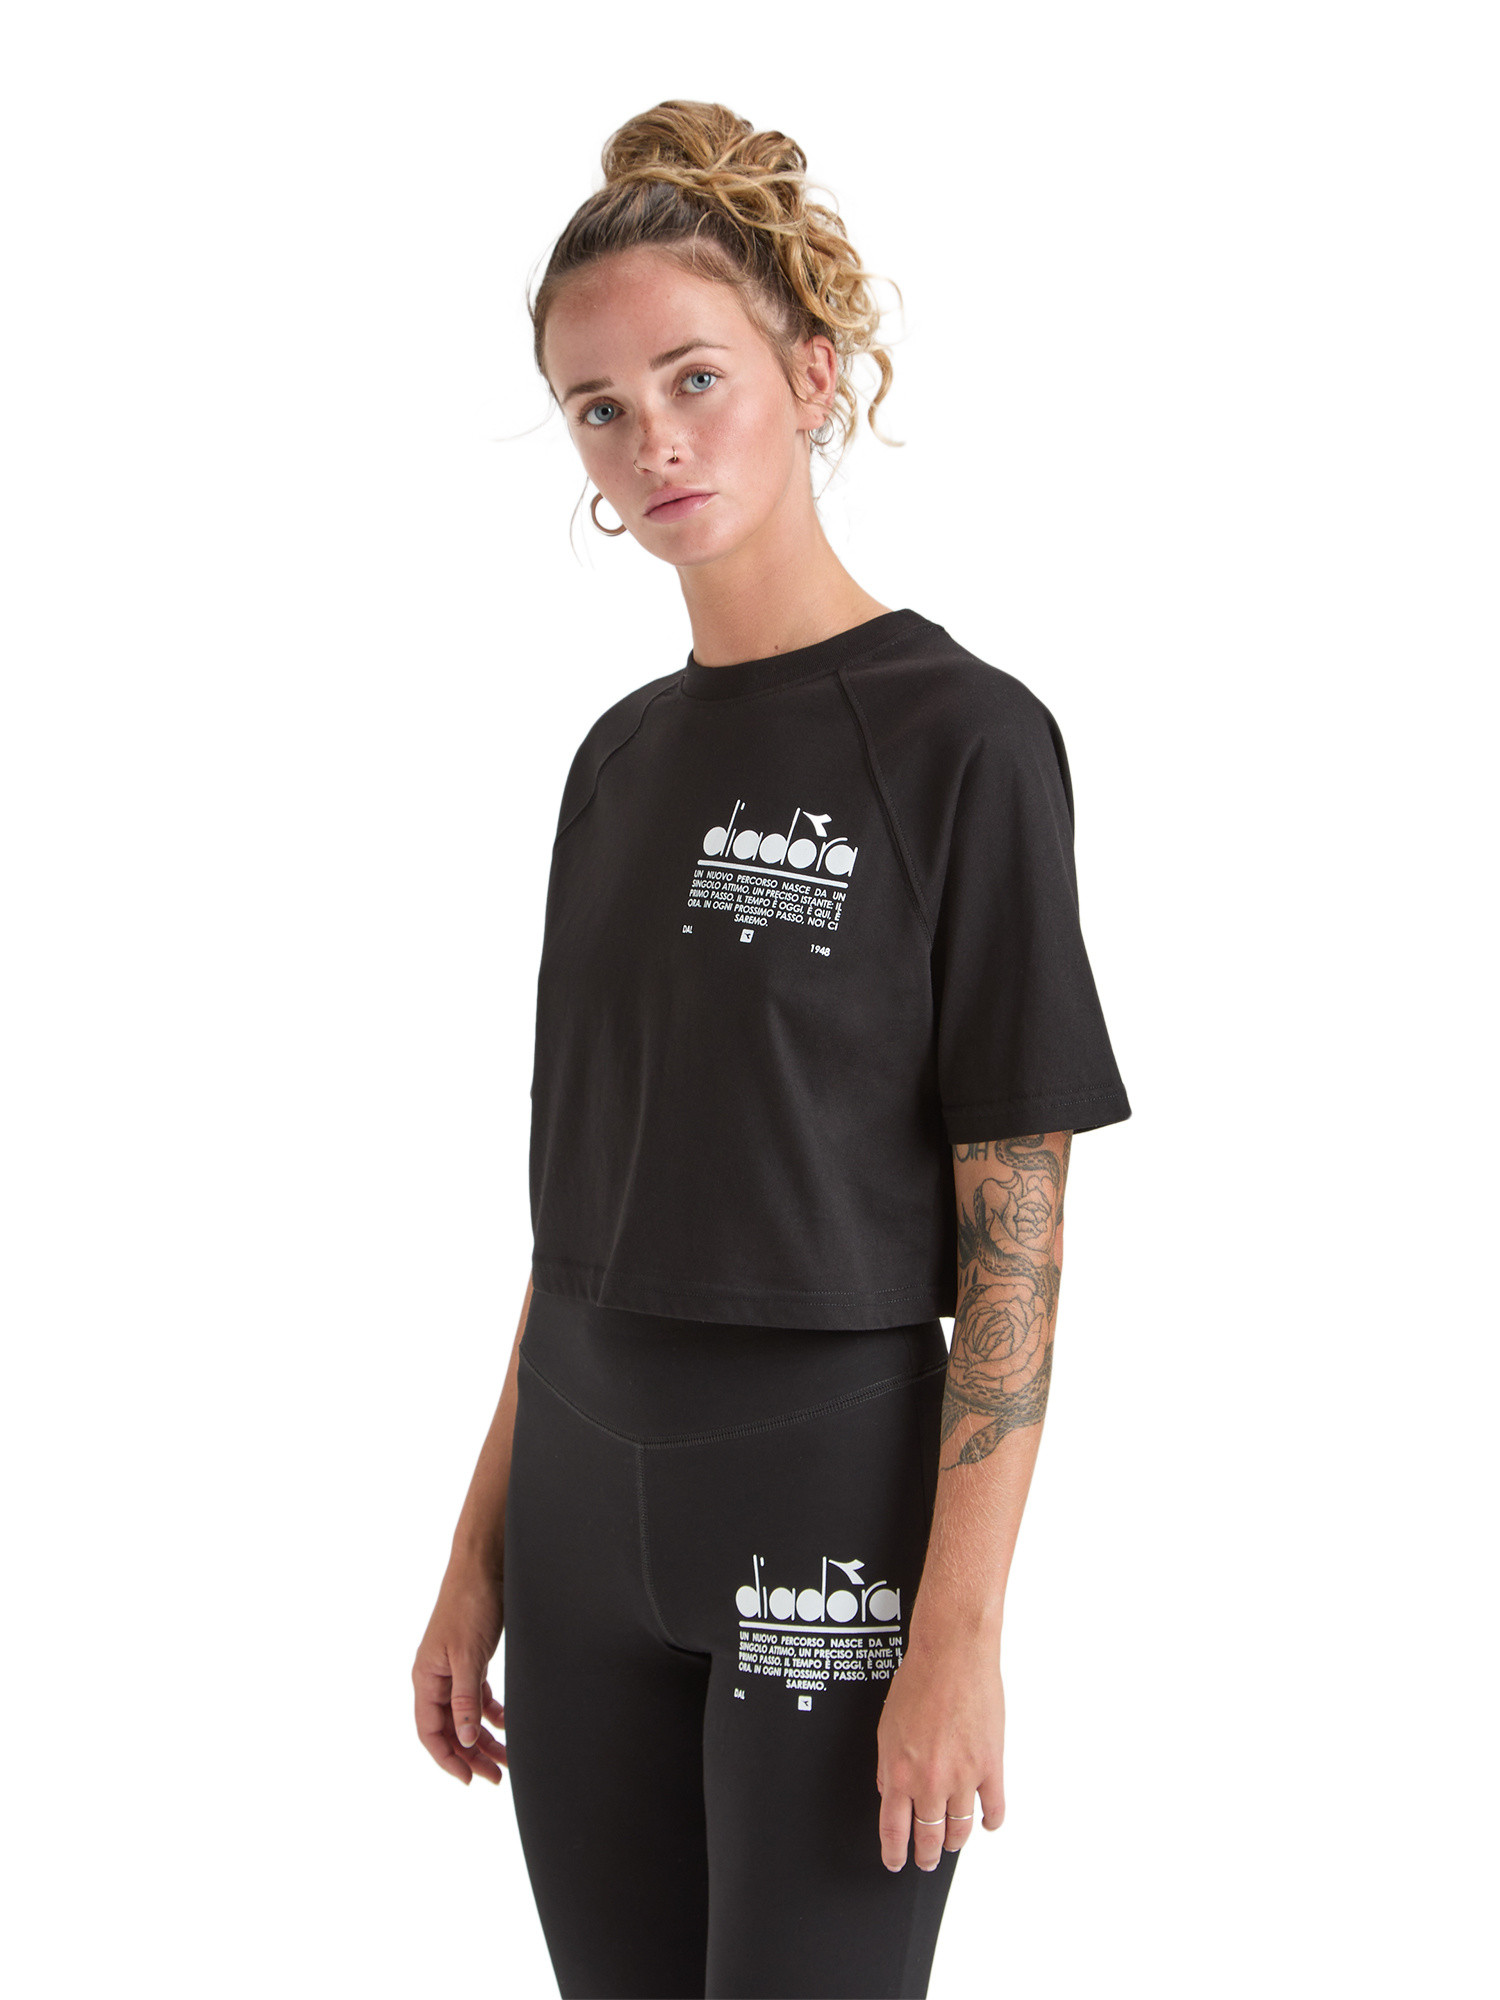 Diadora - Manifesto cotton T-shirt, Black, large image number 2